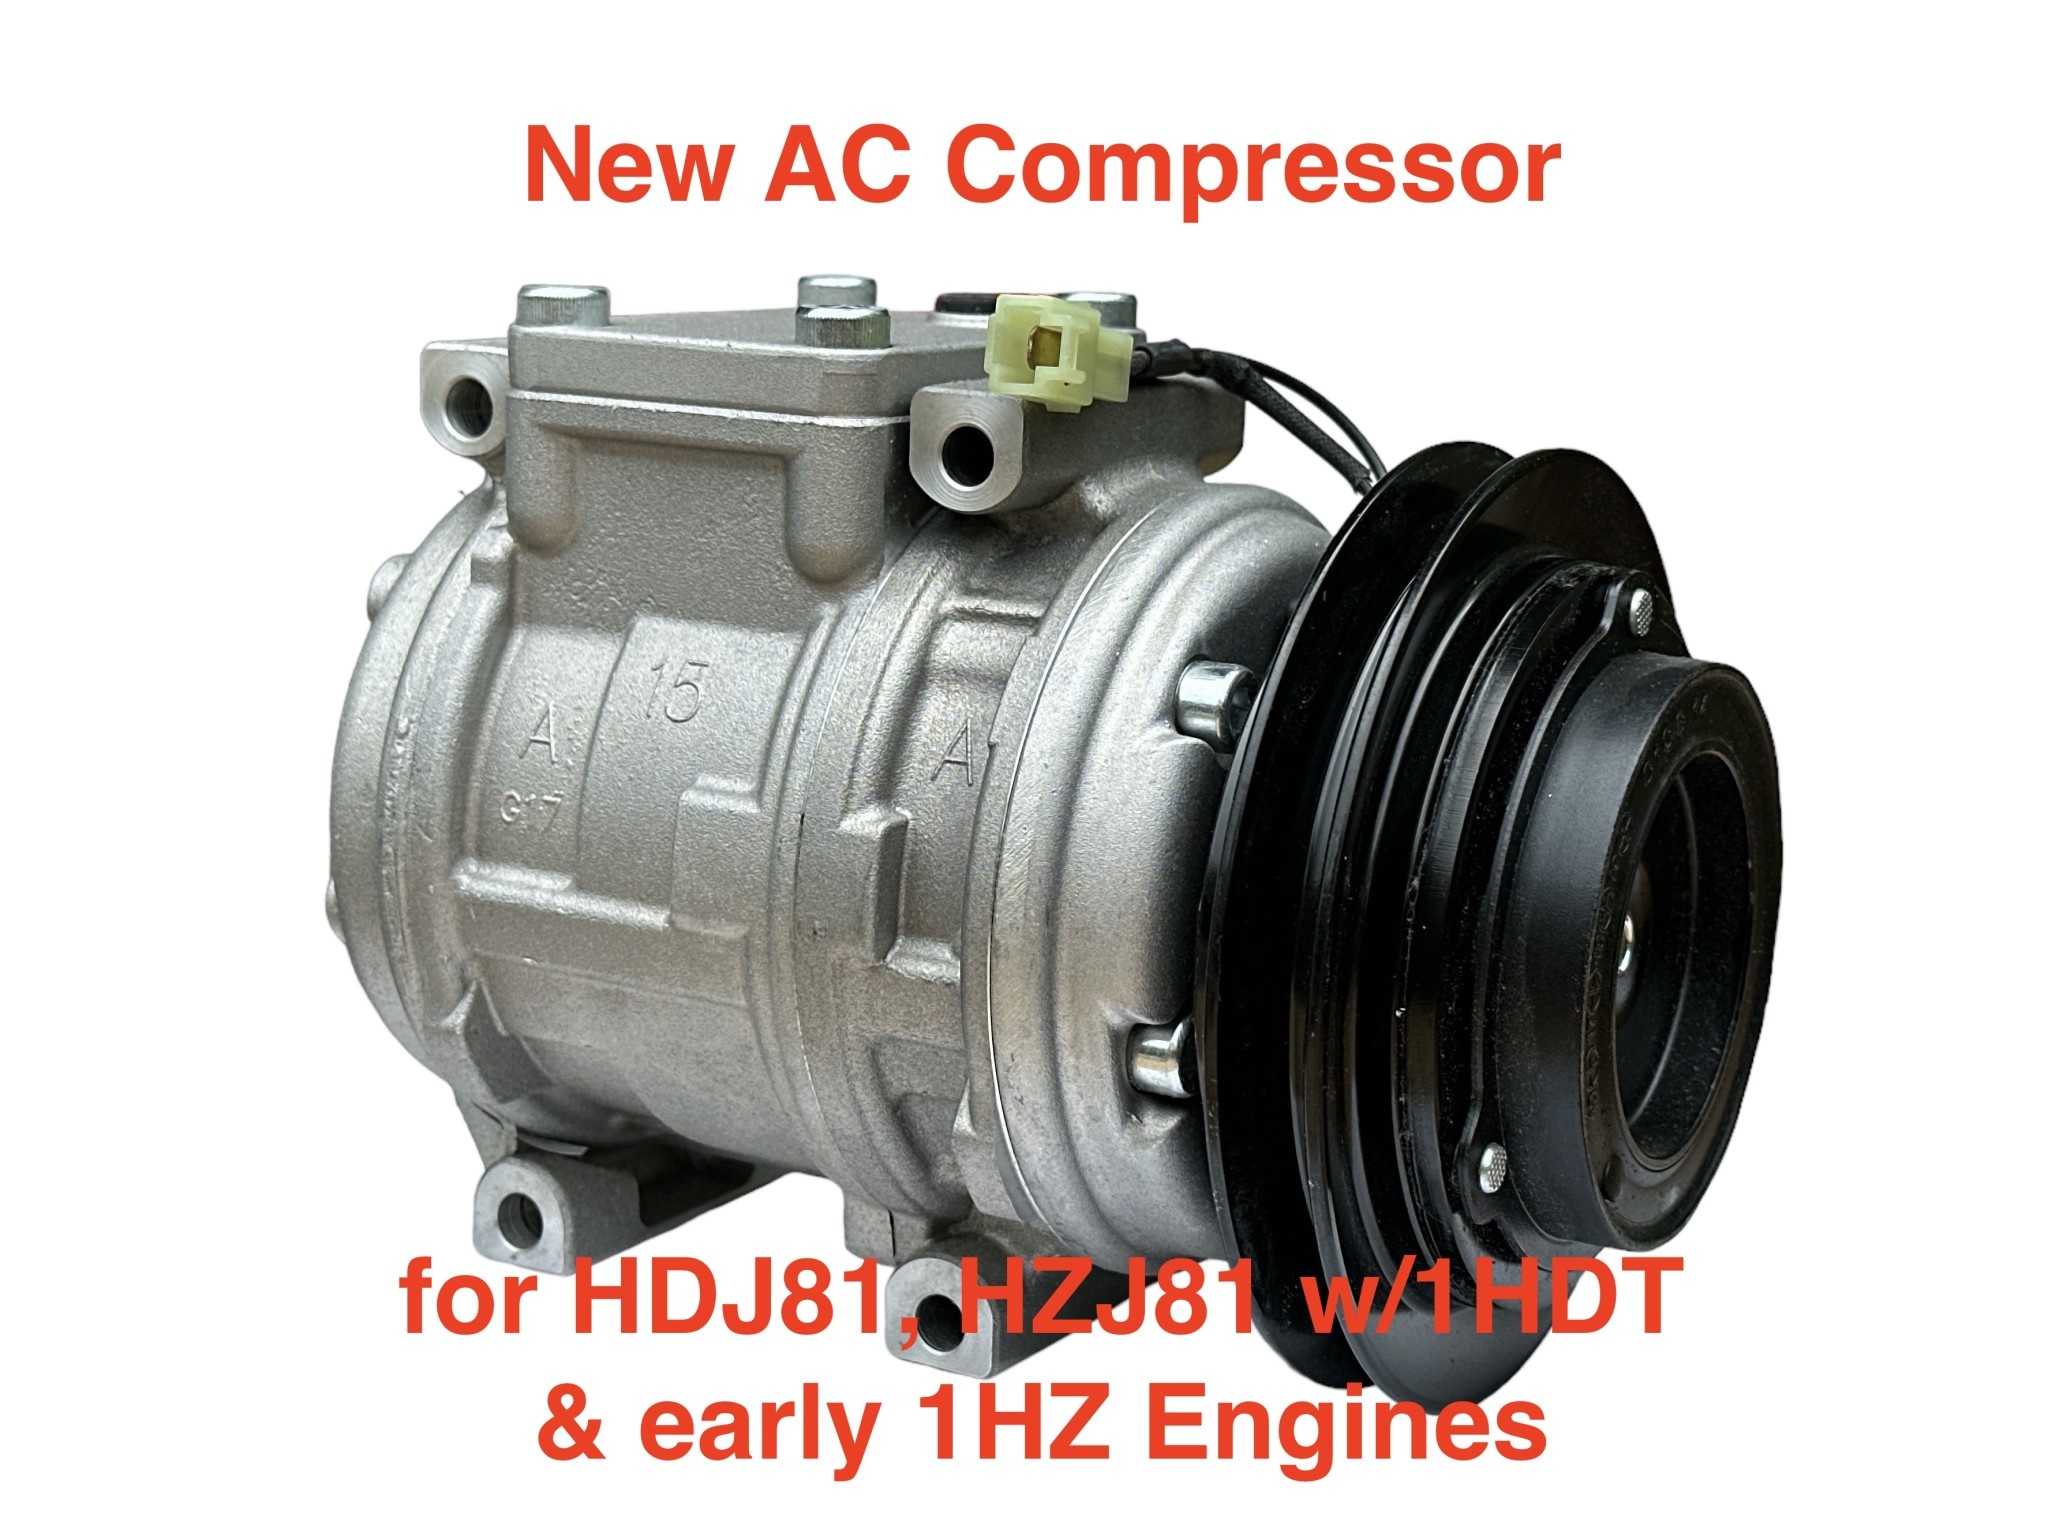 AC Compressor (R134a) 1HZ, 1HDT - Toyota Land Cruiser HDJ80, HDJ81, HZJ80, HZJ81  w/pulley & clutch (12V)